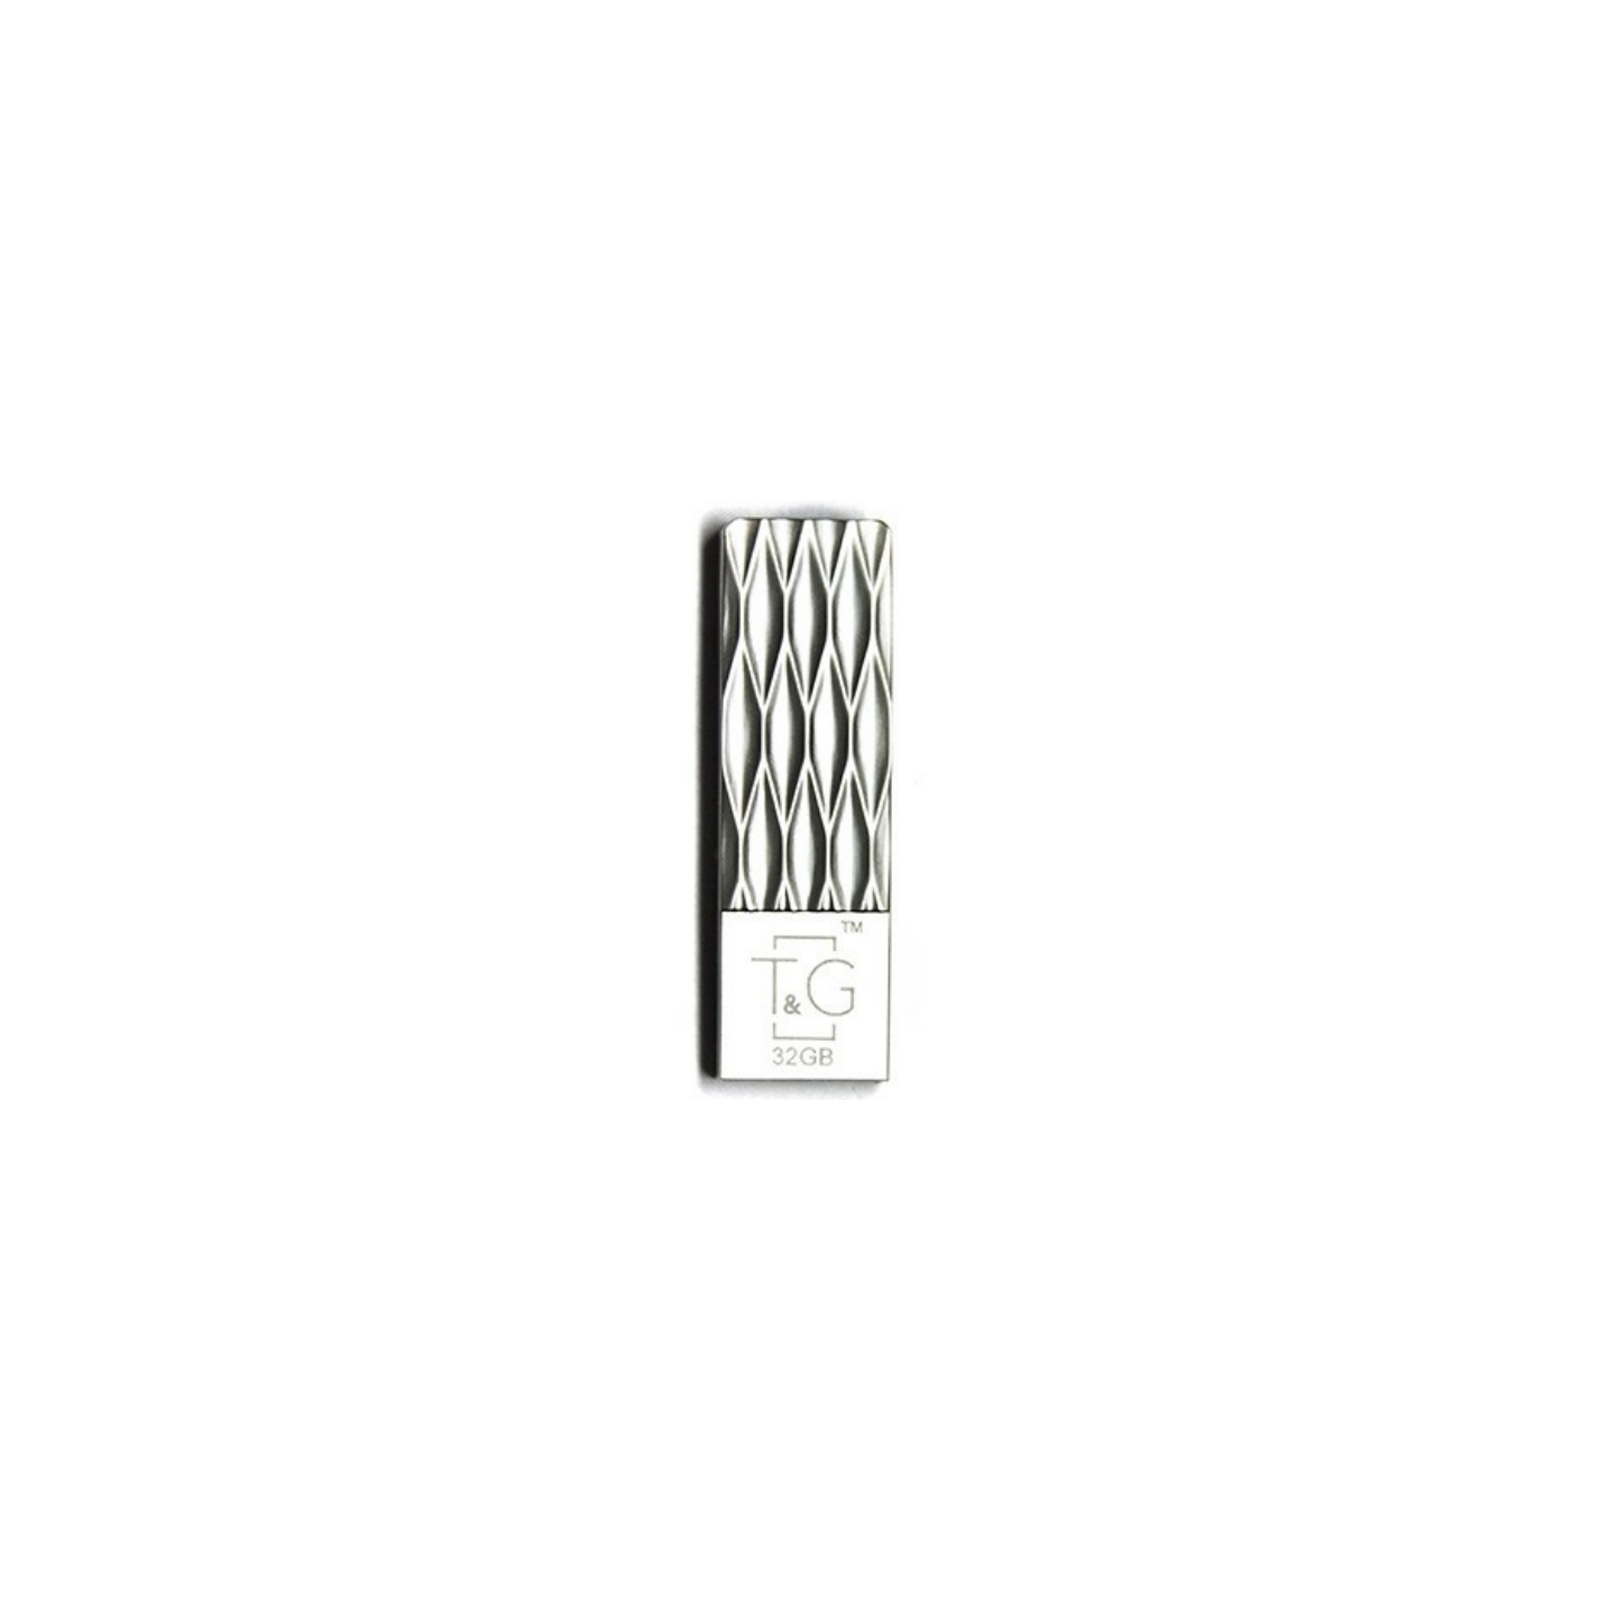 USB флеш накопитель T&G 32GB 103 Metal Series Silver USB 2.0 (TG103-32G)